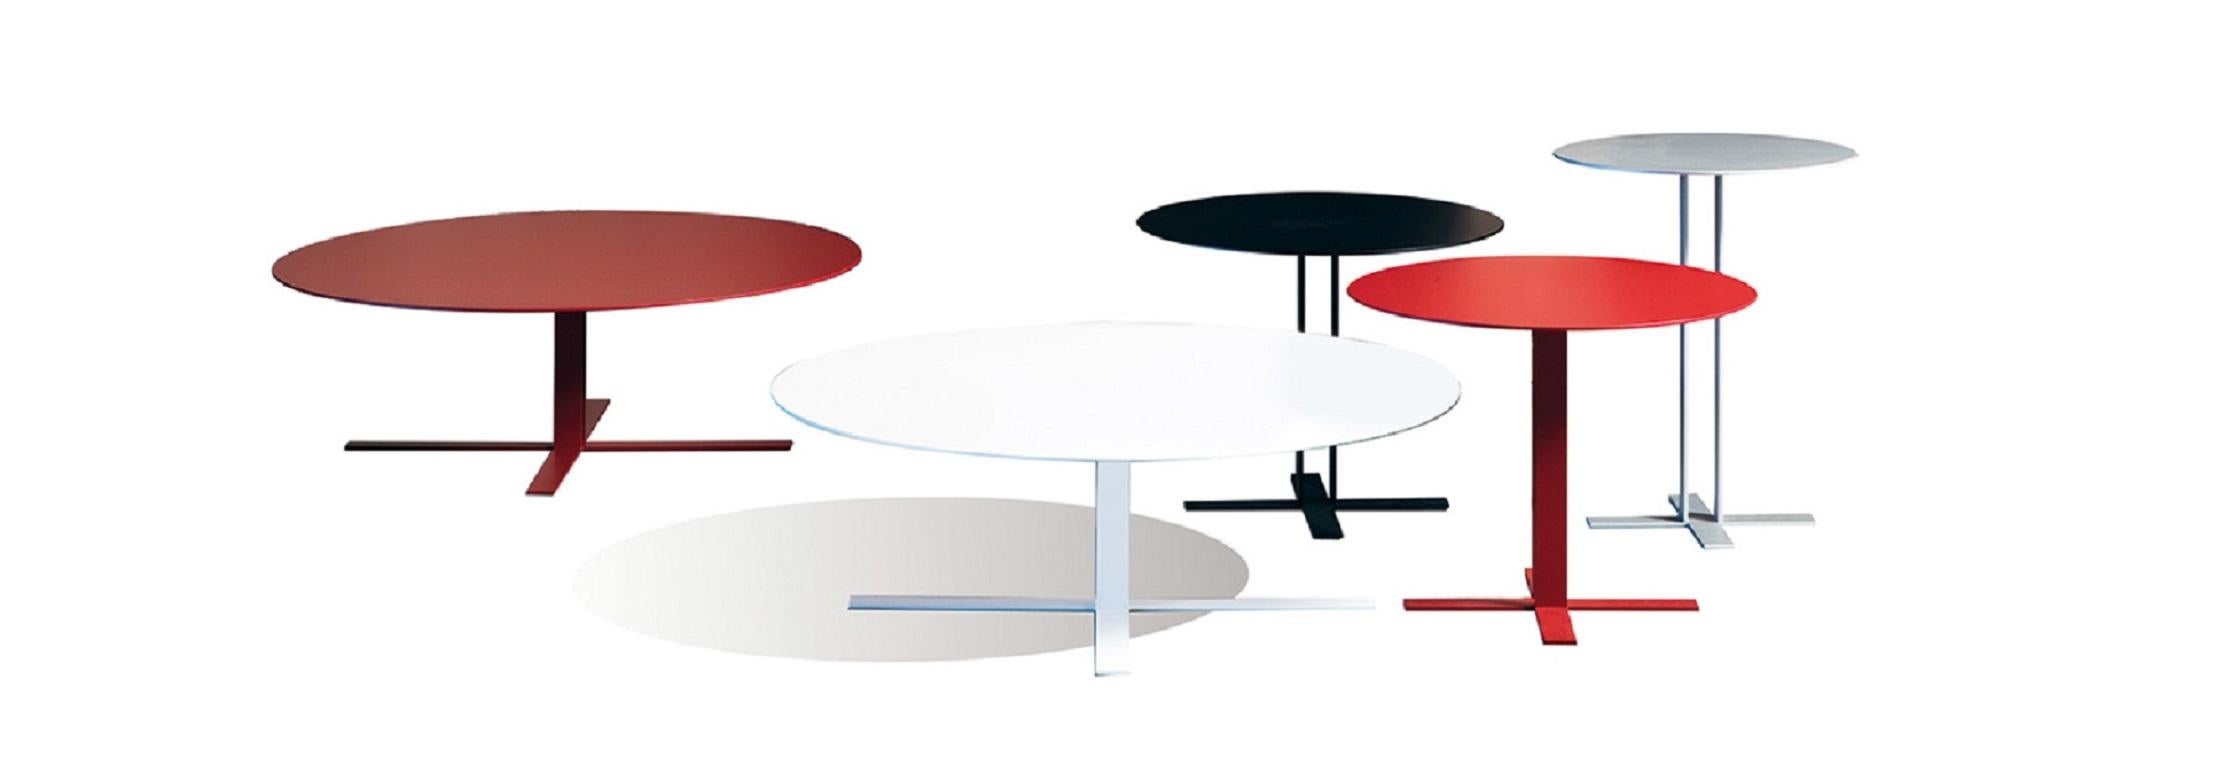 Ein leichter, klarer und stilvoller Tisch mit einem starken, klaren Design und einem eleganten, zierlichen Geist. Sockel aus Metall und Platte aus MDF. Erhältlich in einer matt lackierten Ausführung.

Der Designer Giuseppe Viganò widmet sich dem